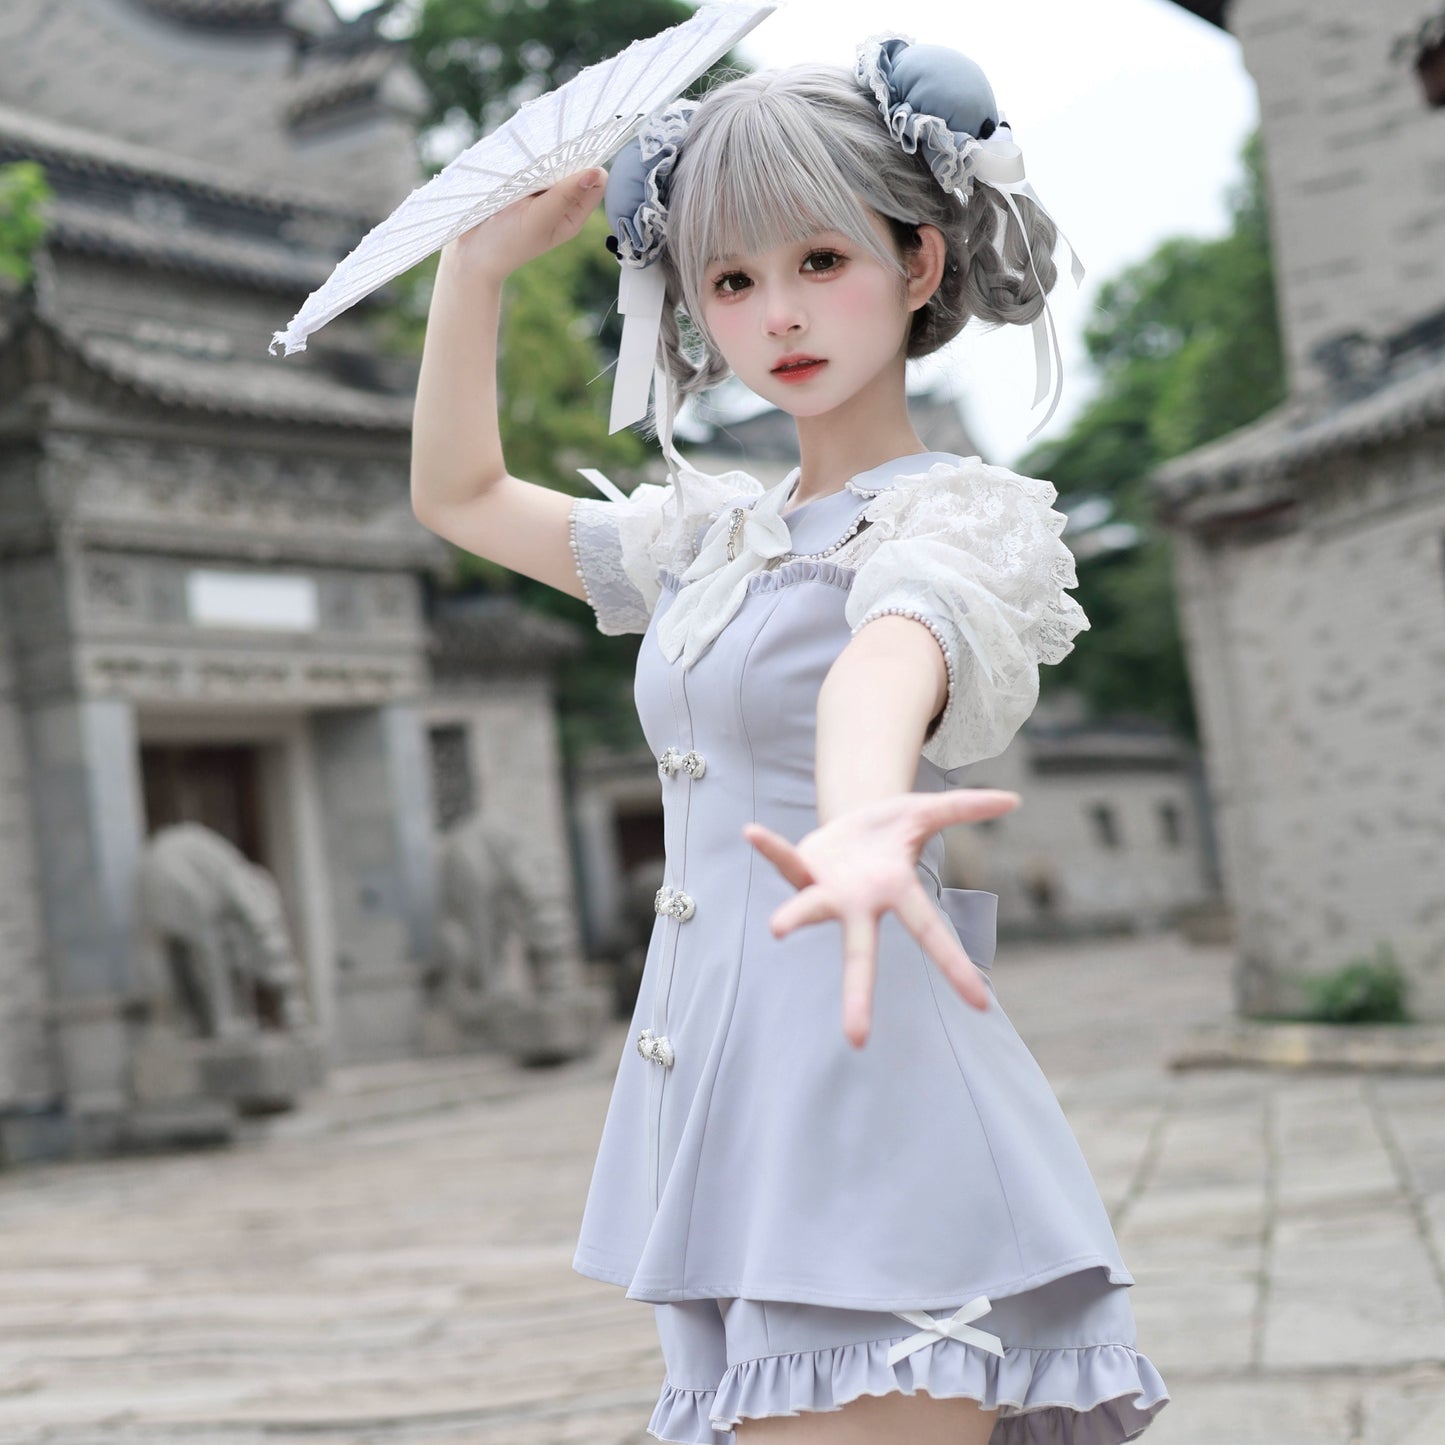 Jirai Kei Set Up Petal Collar Dress Chinese Style Outfit 37120:551916